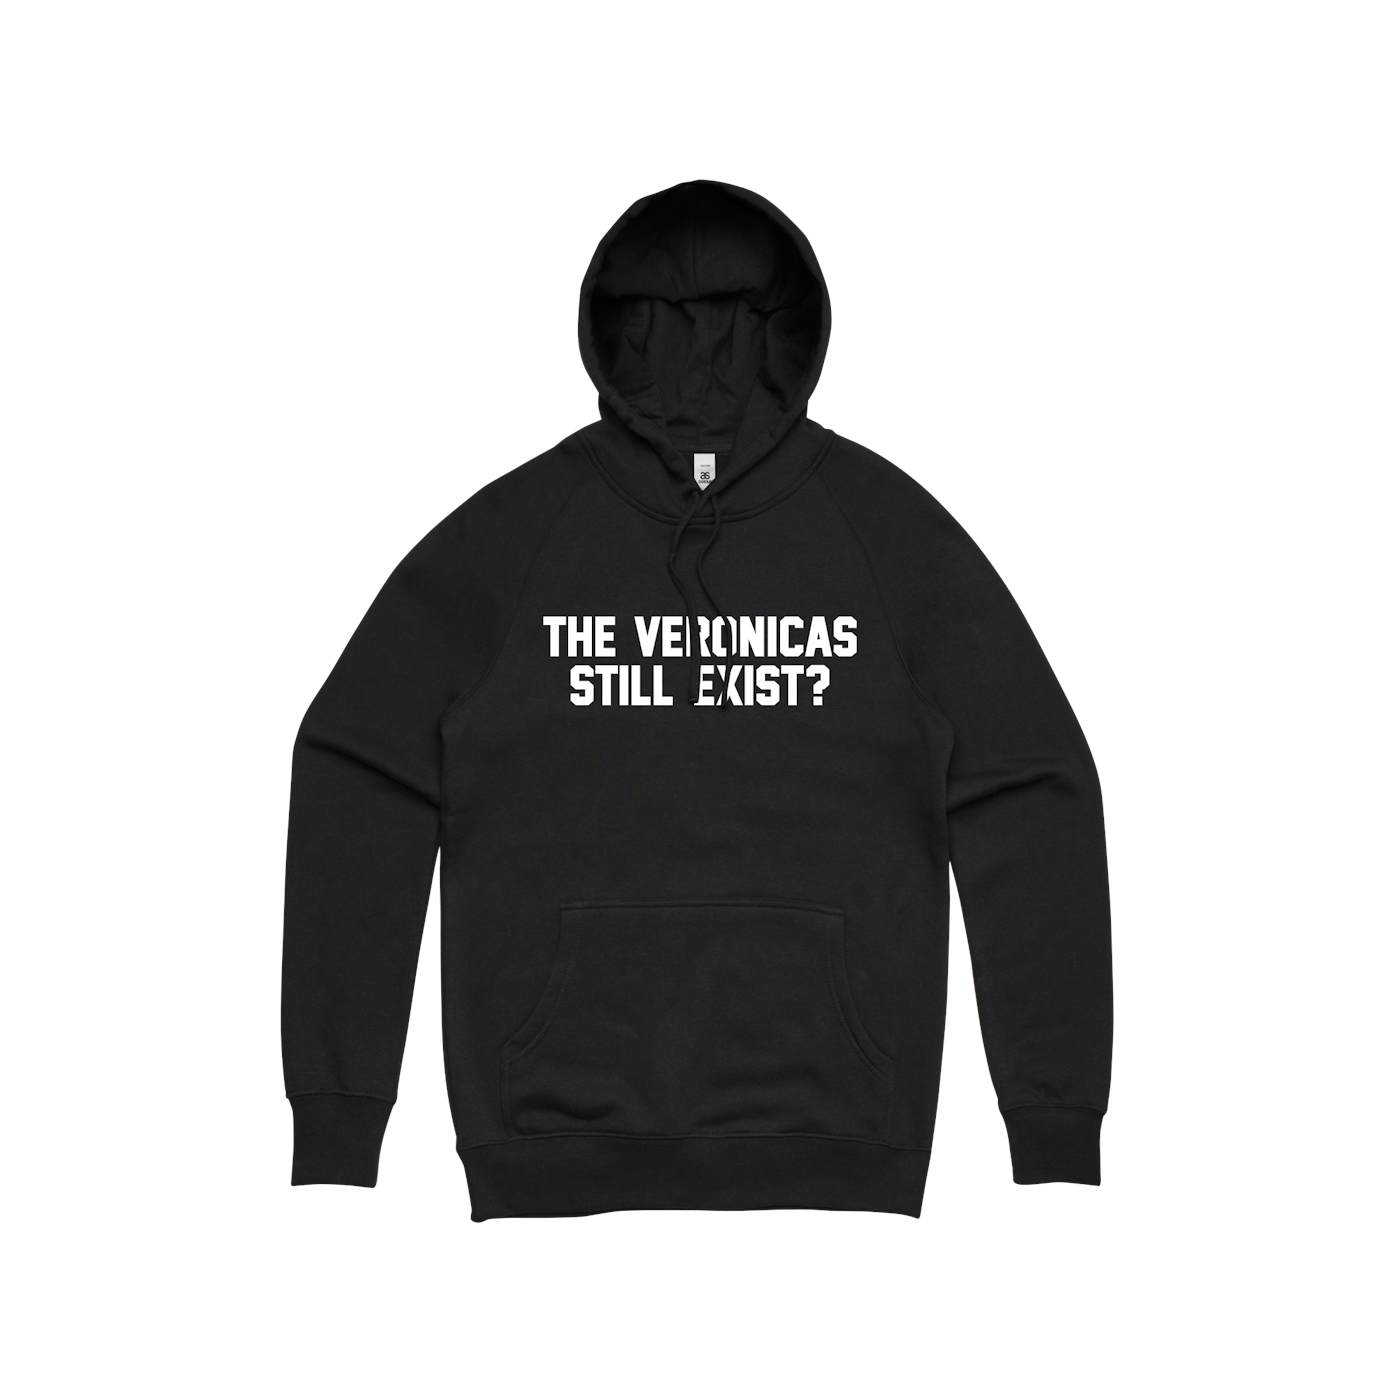 The Veronicas Still Exist? / Black Hood